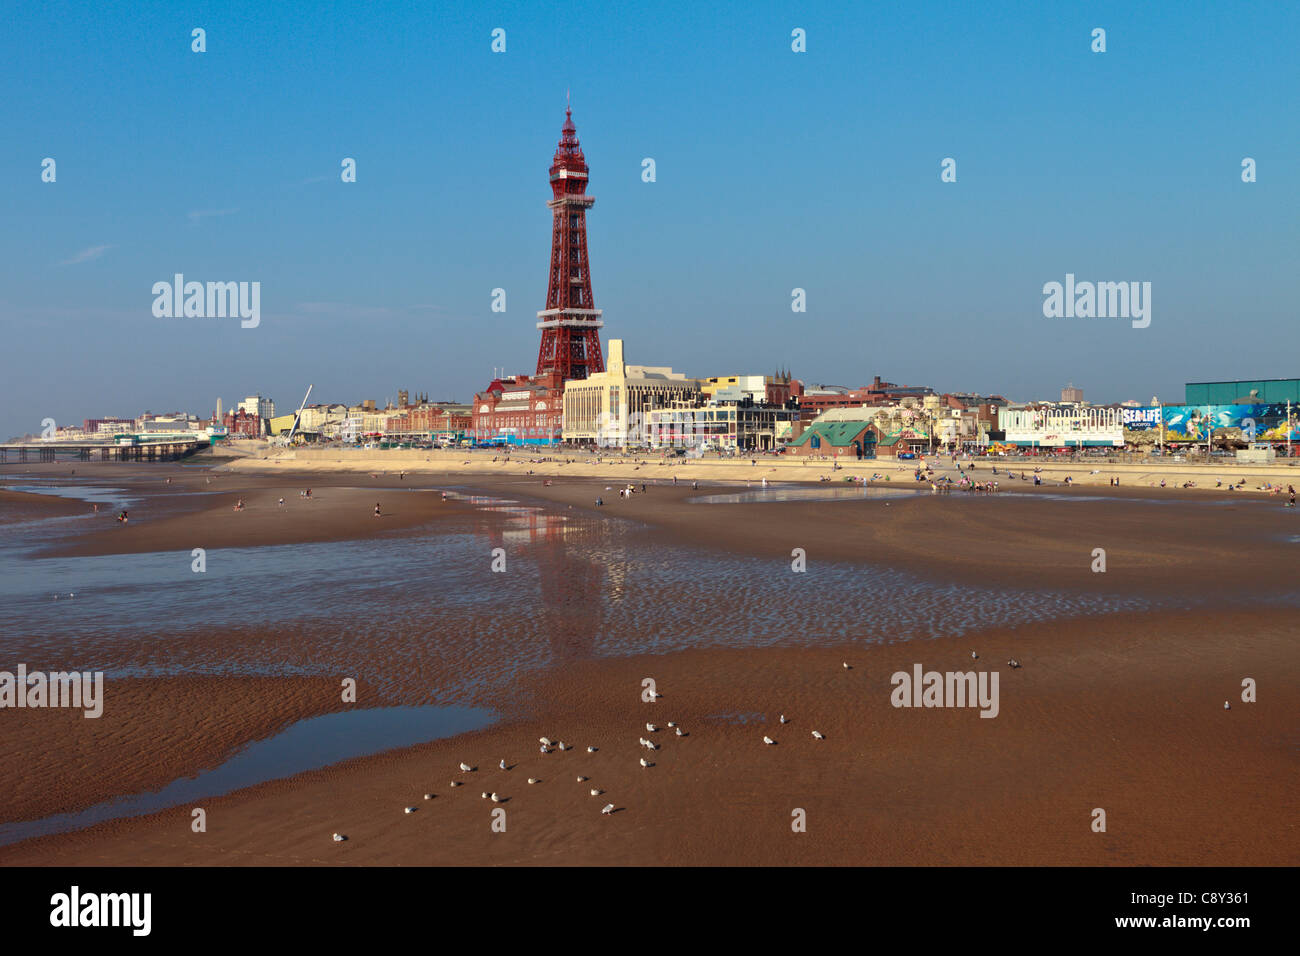 La torre e la spiaggia di Blackpool, Inghilterra Foto Stock